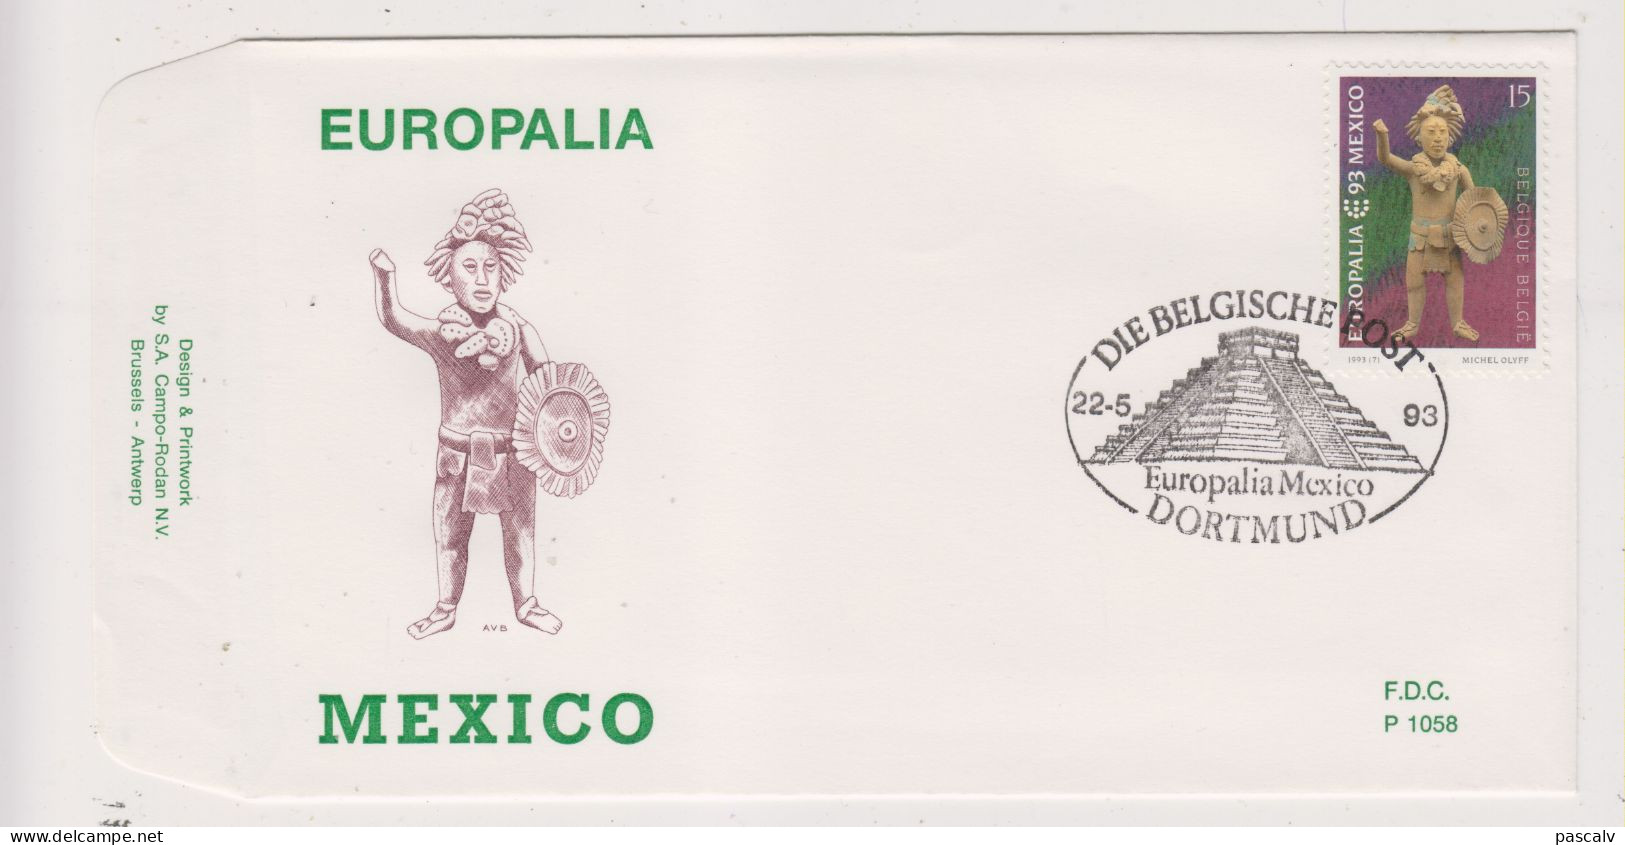 FDC 1058 COB 2508 Europalia Mexico Oblitération Dortmund (All) Bureau De Poste Provisoire à L'étranger - 1991-2000